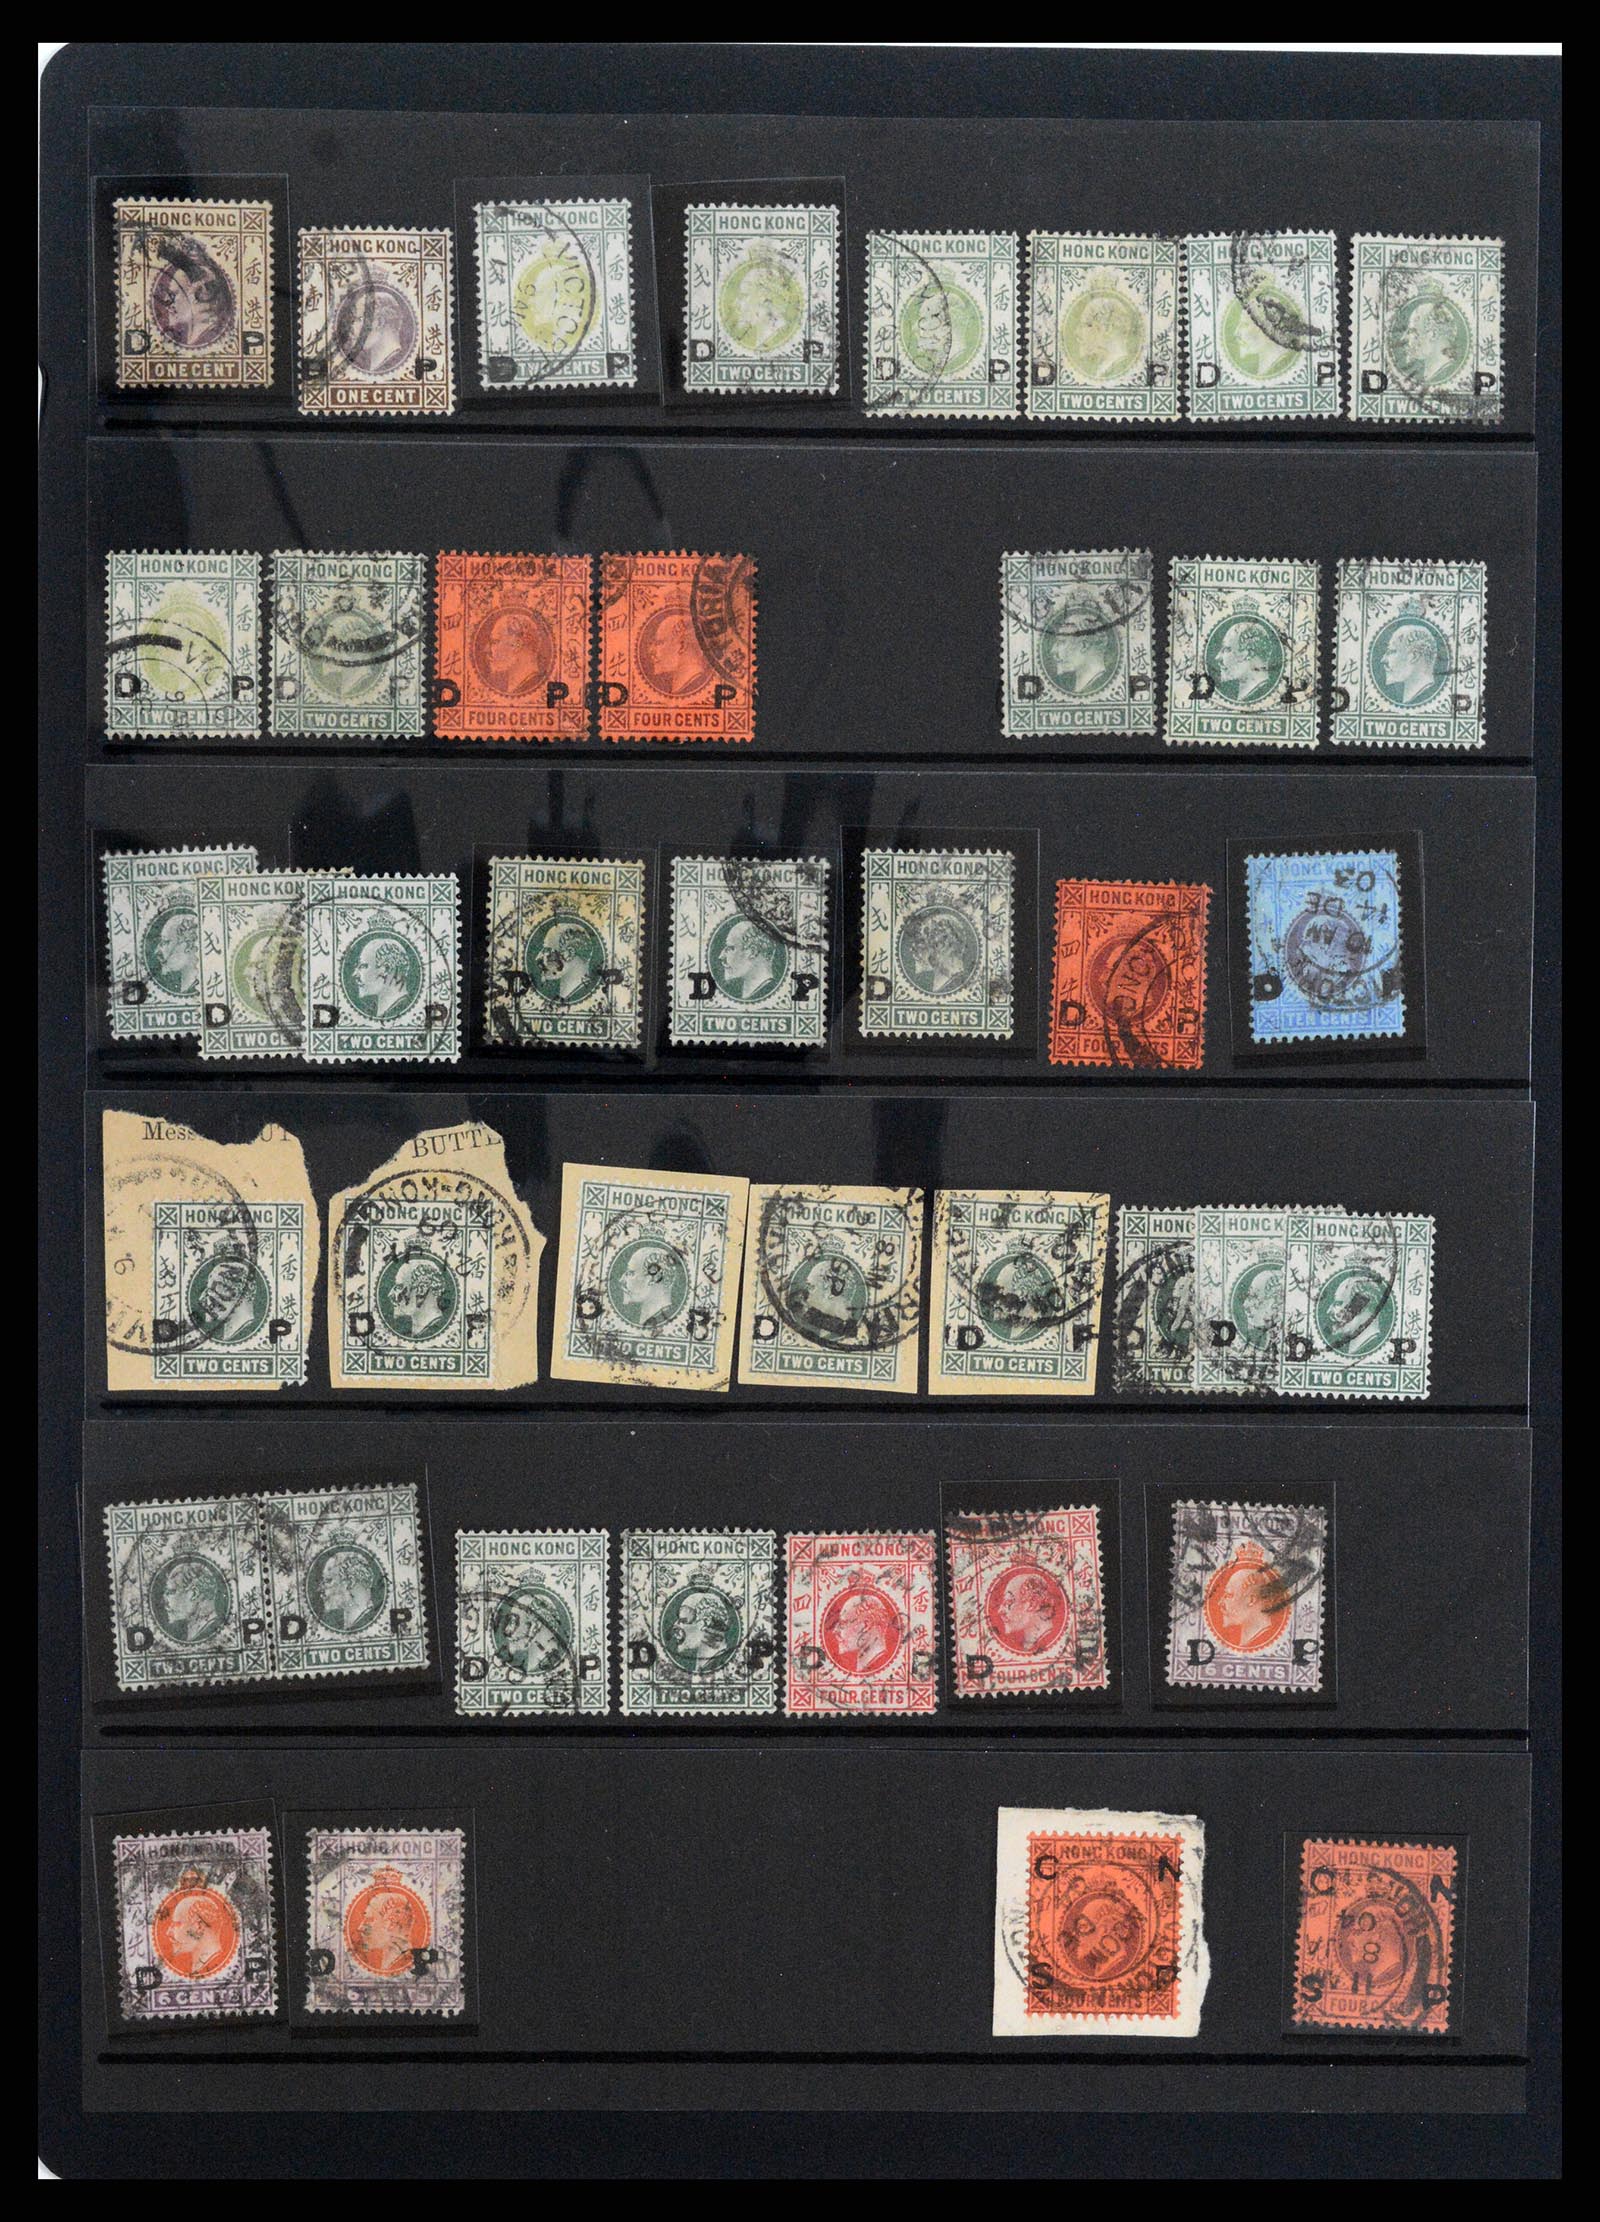 37358 059 - Stamp collection 37358 Hong Kong 1861-1997.